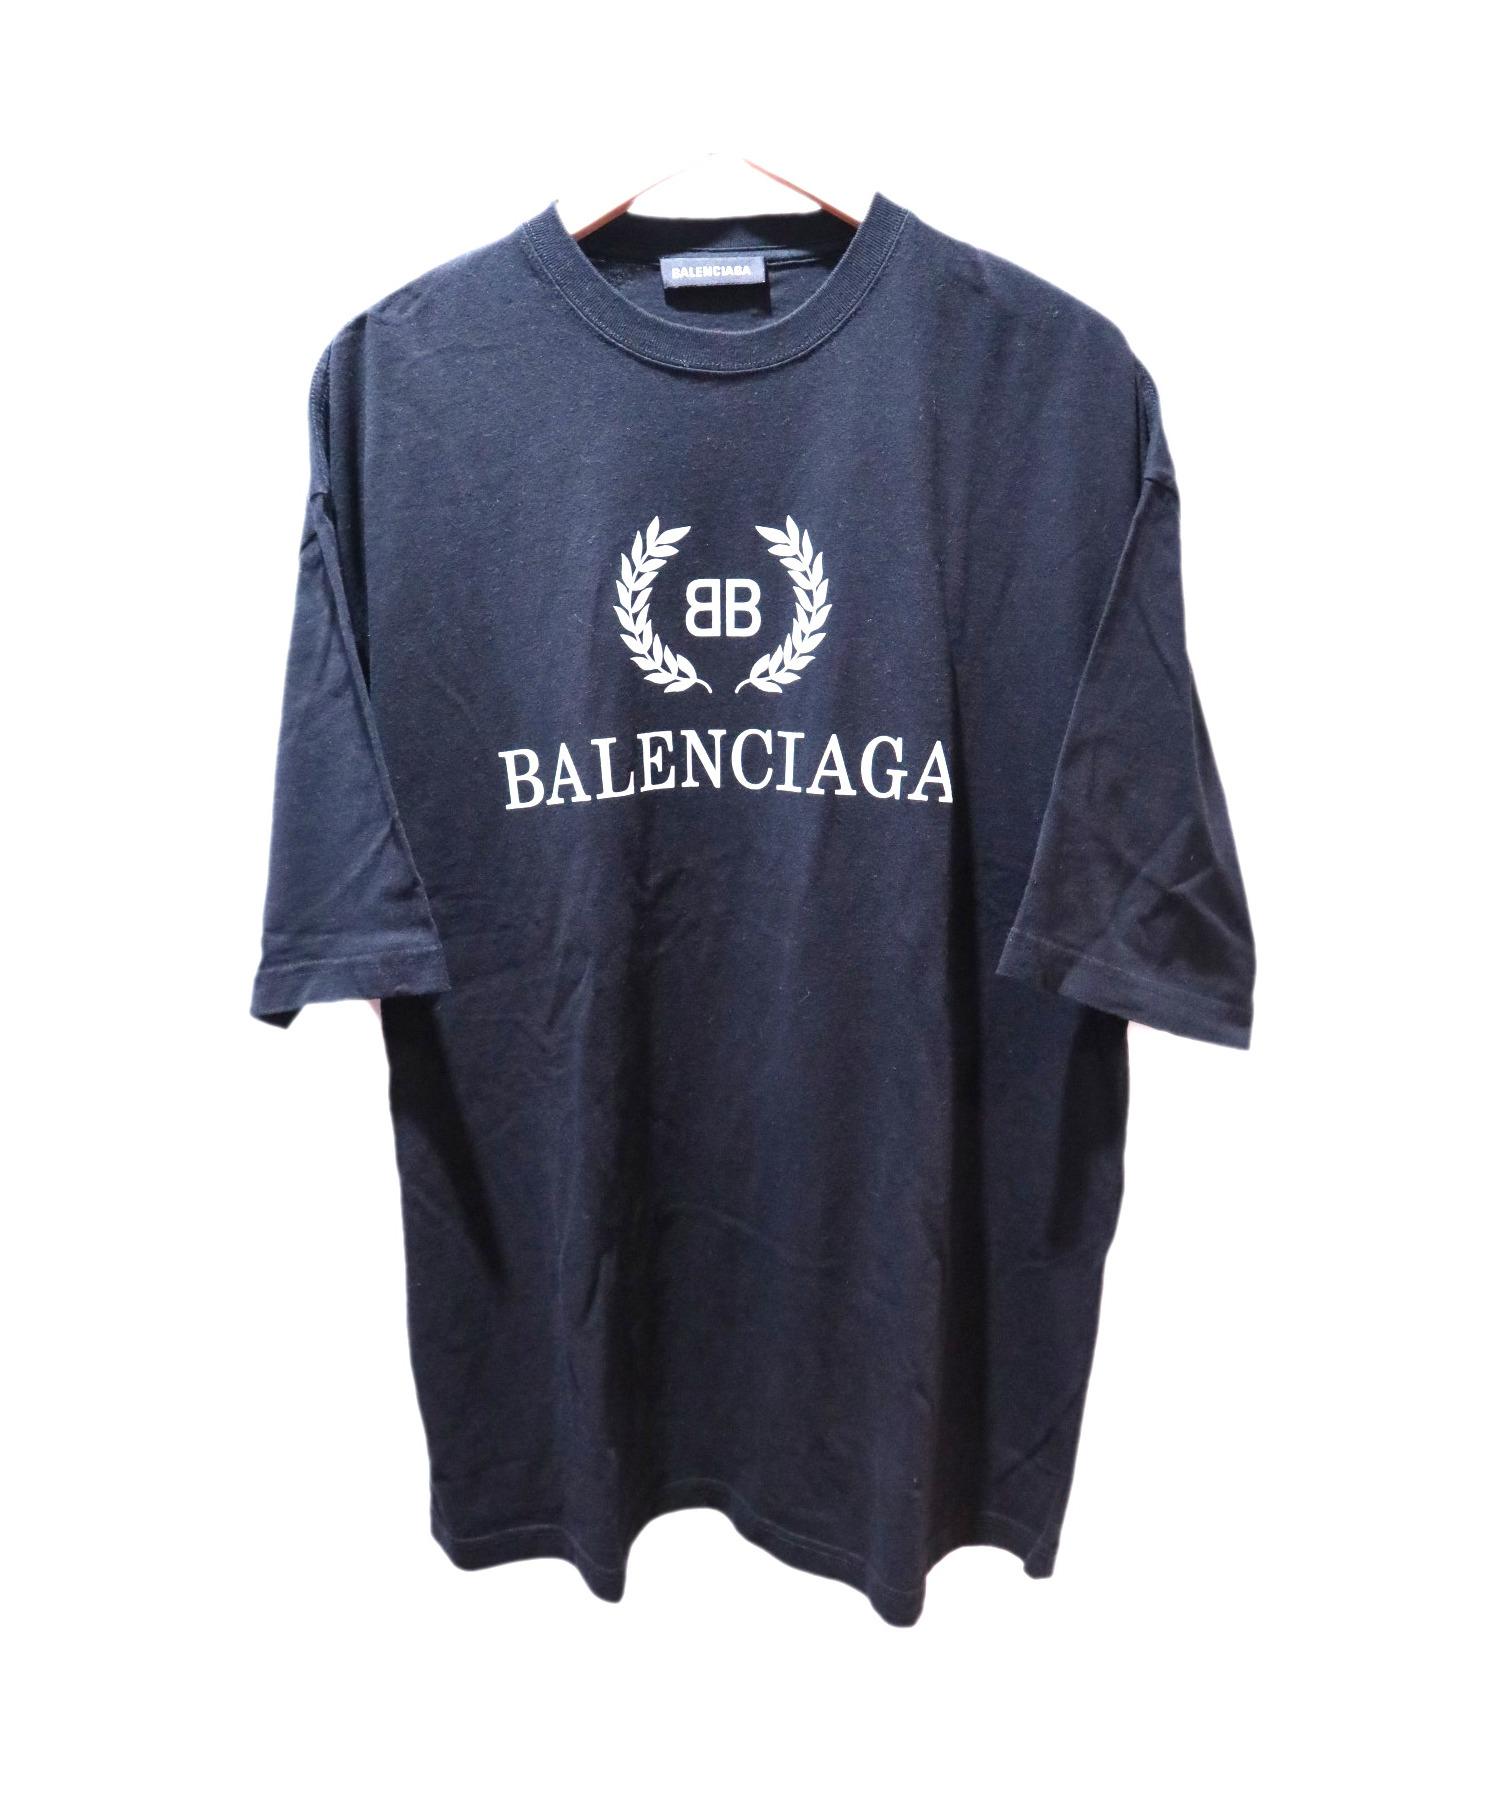 新品未使用 ★ BALENCIAGA  Tシャツ 19SS バレンシアガ